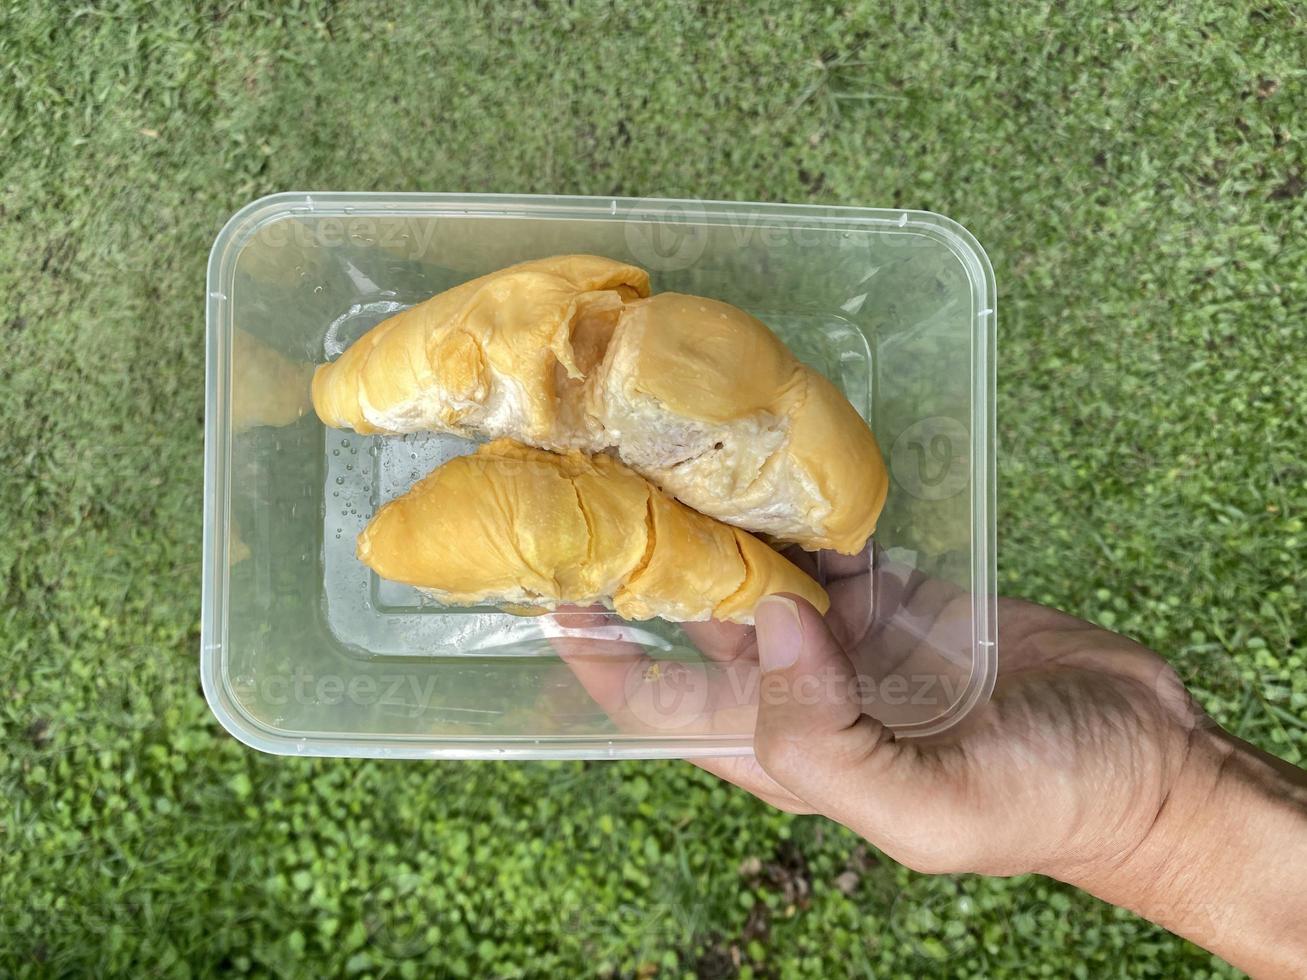 una mano sosteniendo durians dentro de un recipiente de plástico, listo para llevar. foto